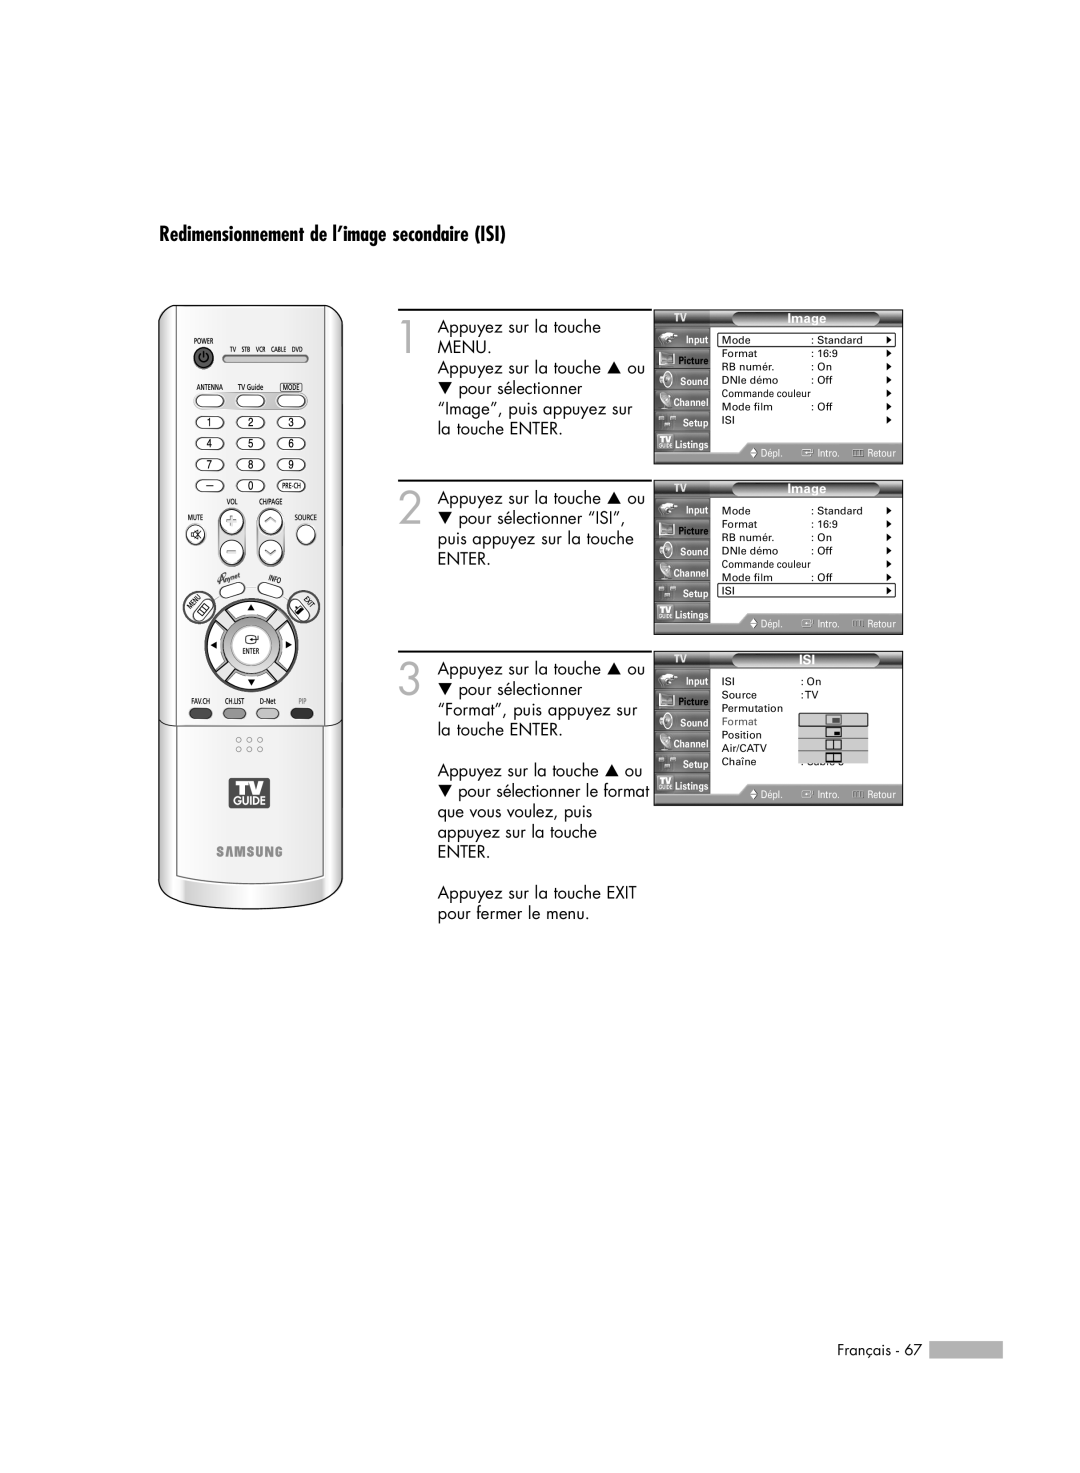 Samsung HL-R7178W, HL-R6178W, HL-R5078W, HL-R5678W manual Redimensionnement de l’image secondaire ISI, Format 